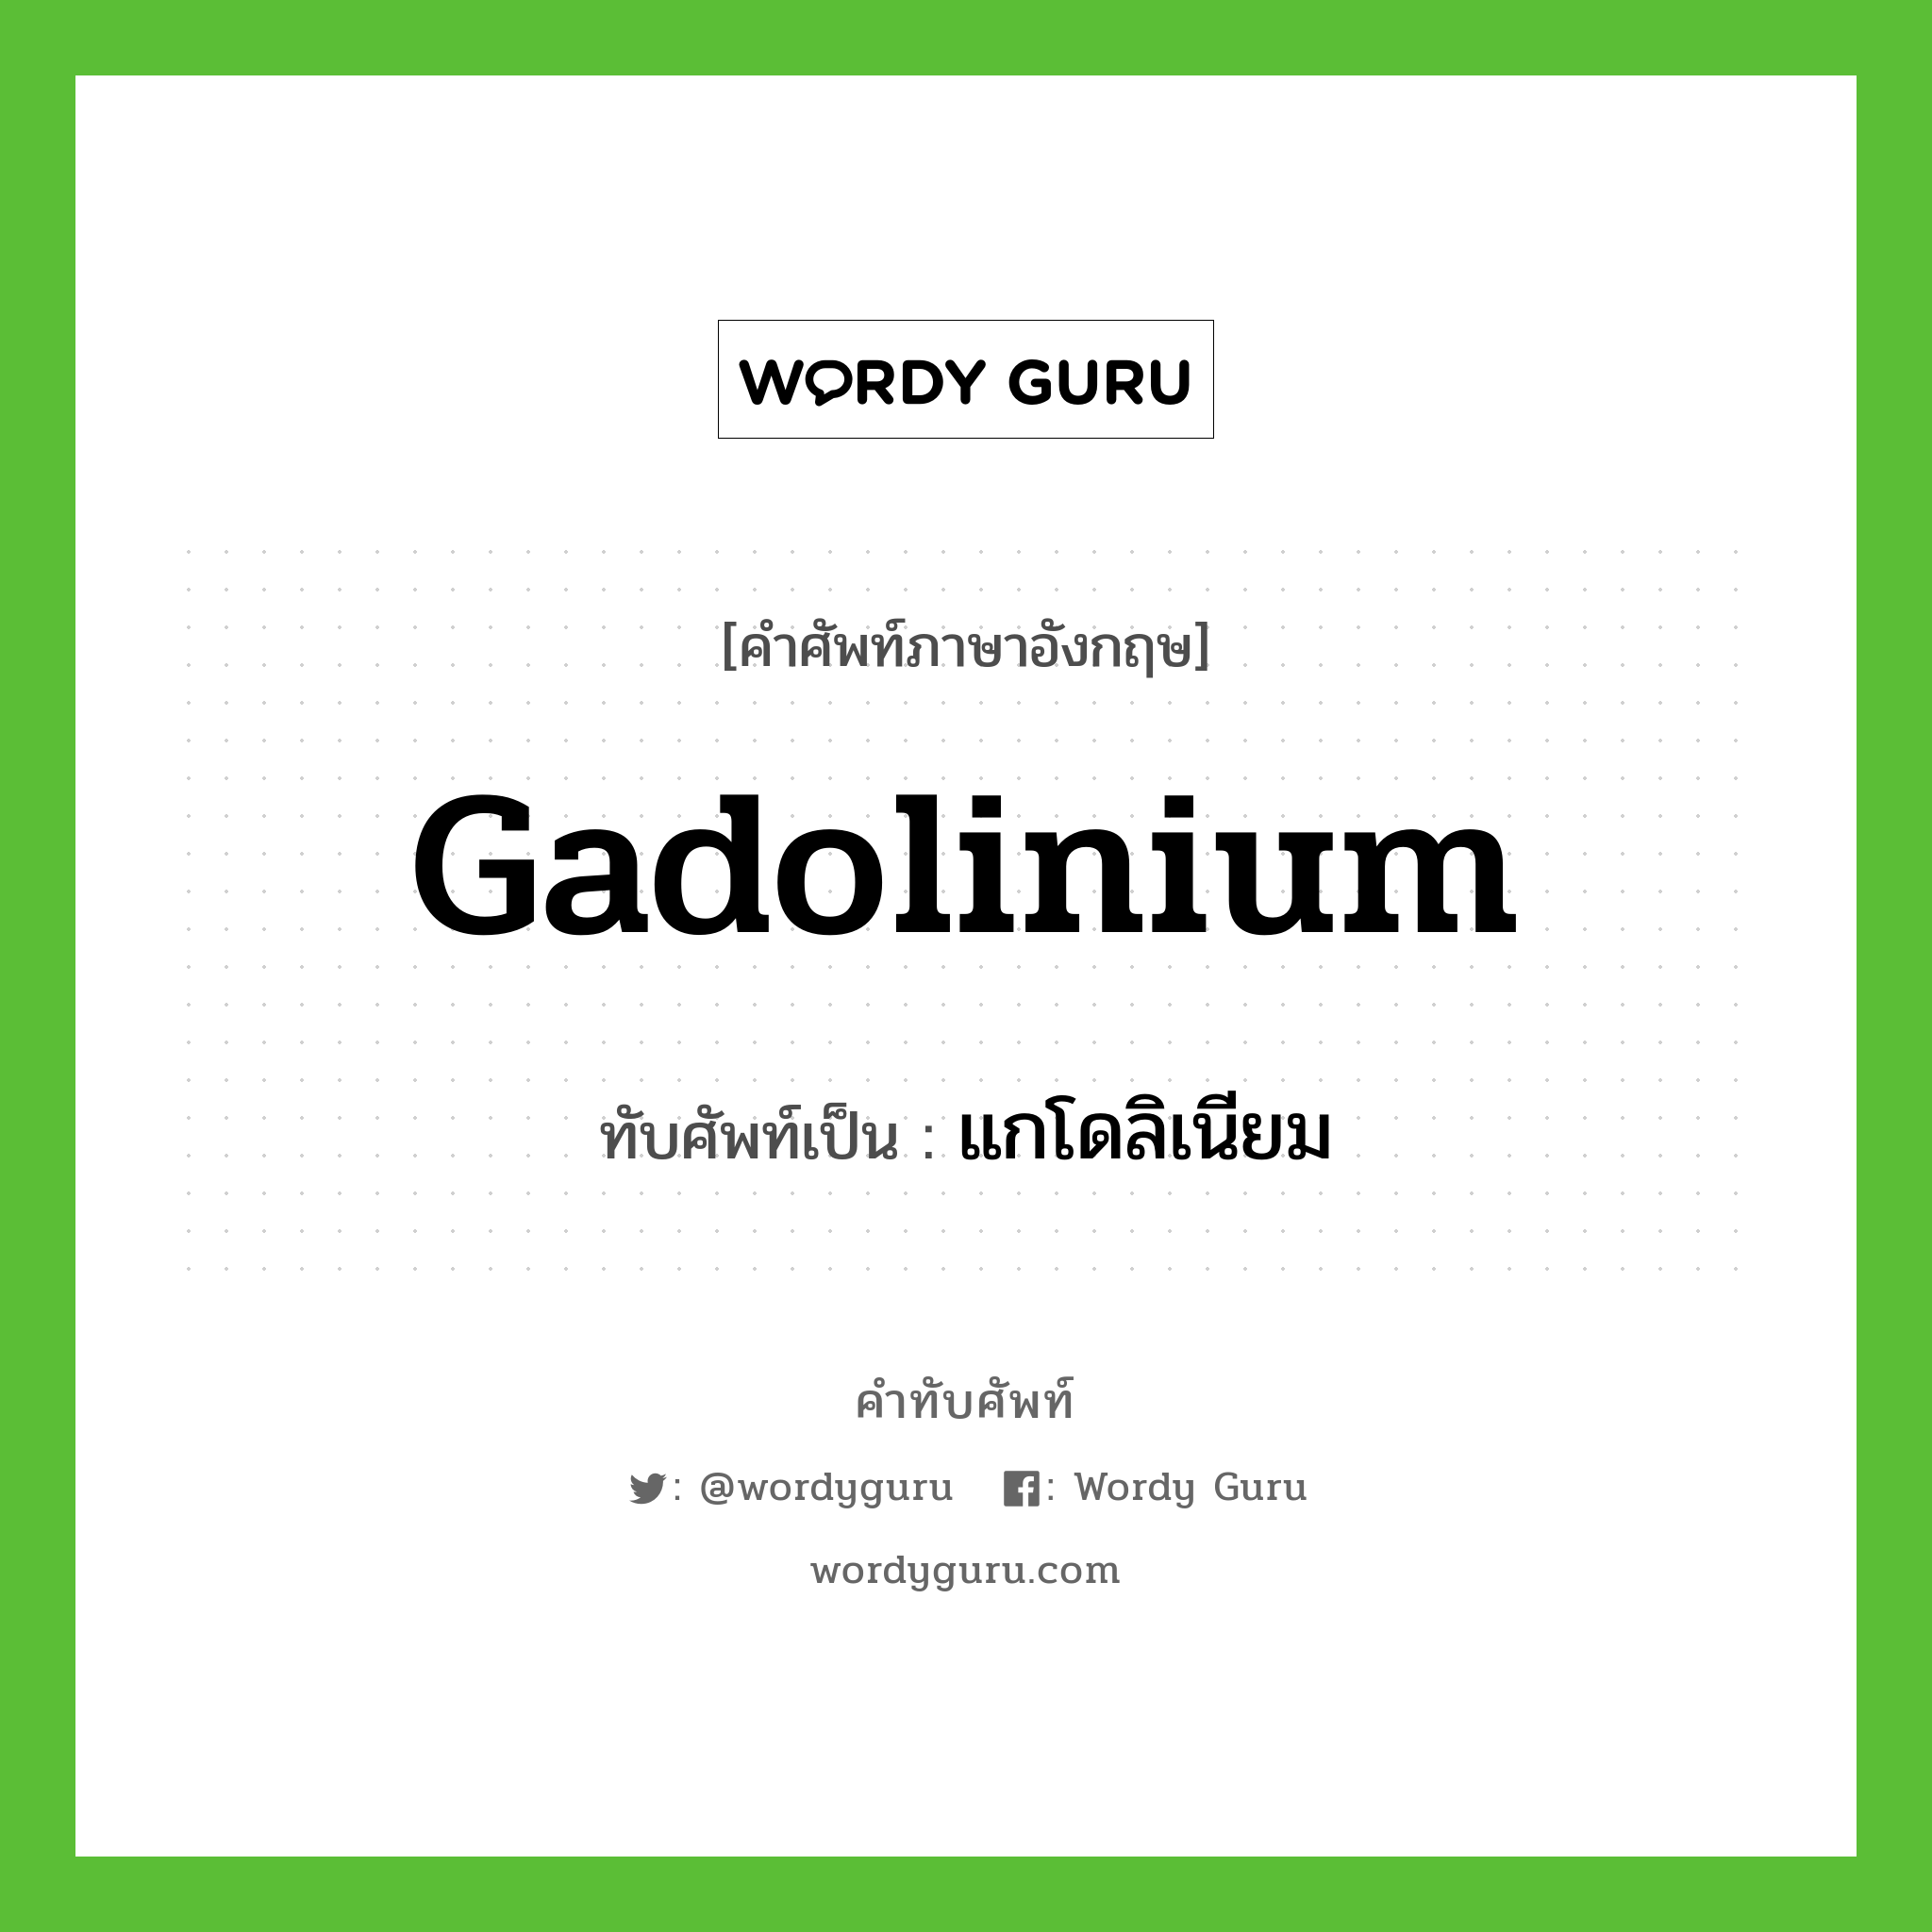 แกโดลิเนียม เขียนอย่างไร?, คำศัพท์ภาษาอังกฤษ แกโดลิเนียม ทับศัพท์เป็น gadolinium